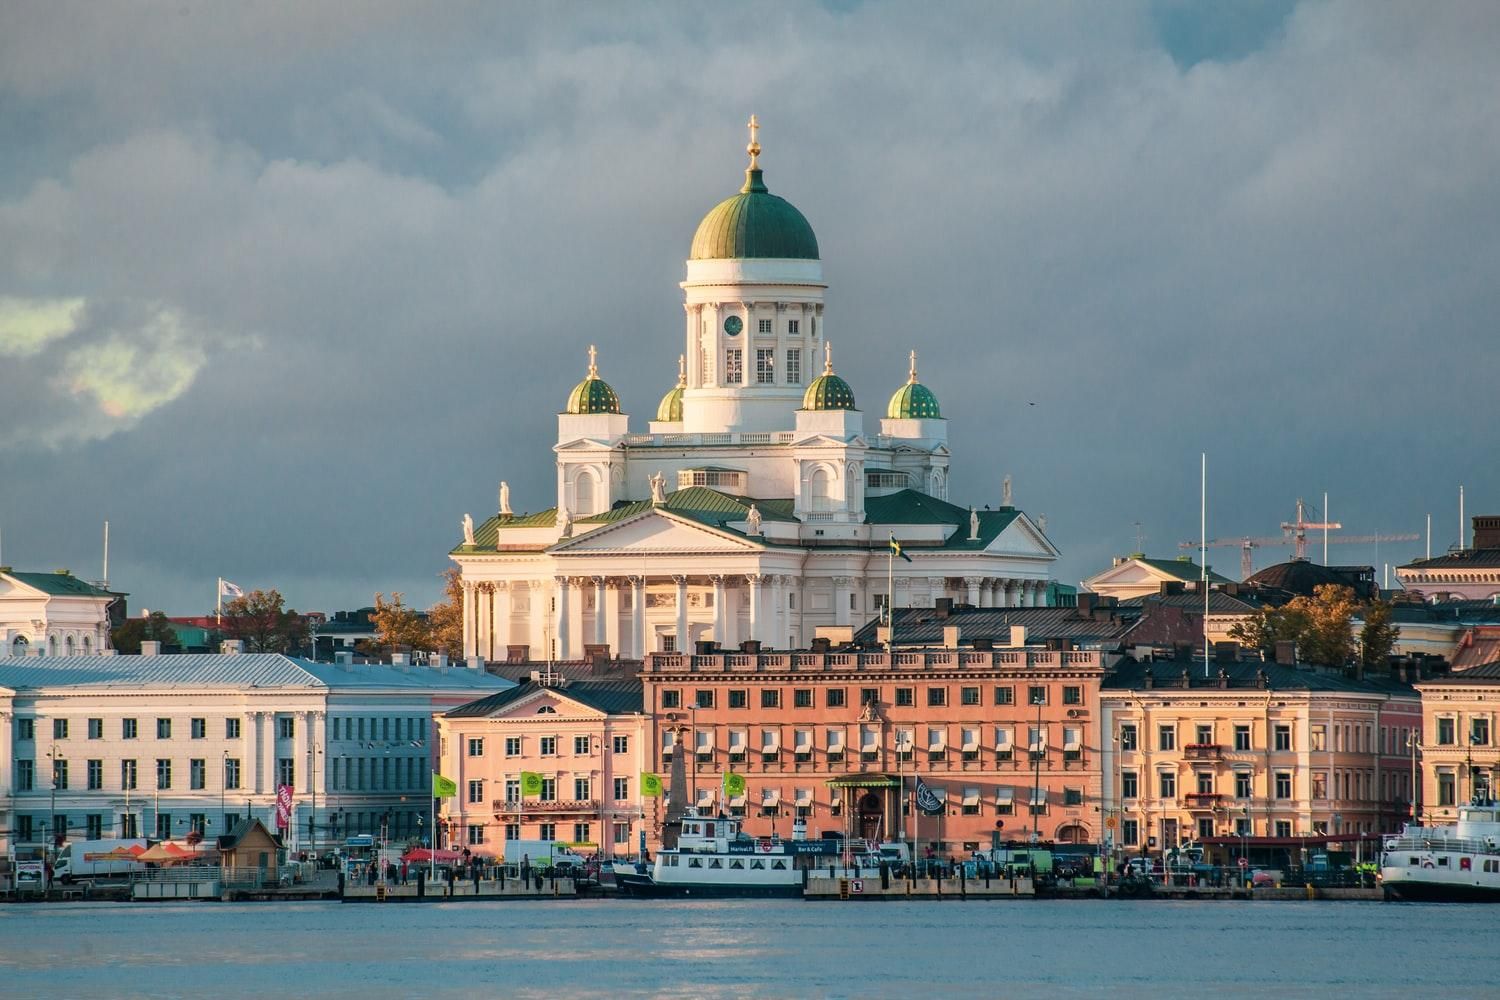 Правильні пріоритети: у Фінляндії уряд виділив додаткові гроші на будівництво музею попри кризу